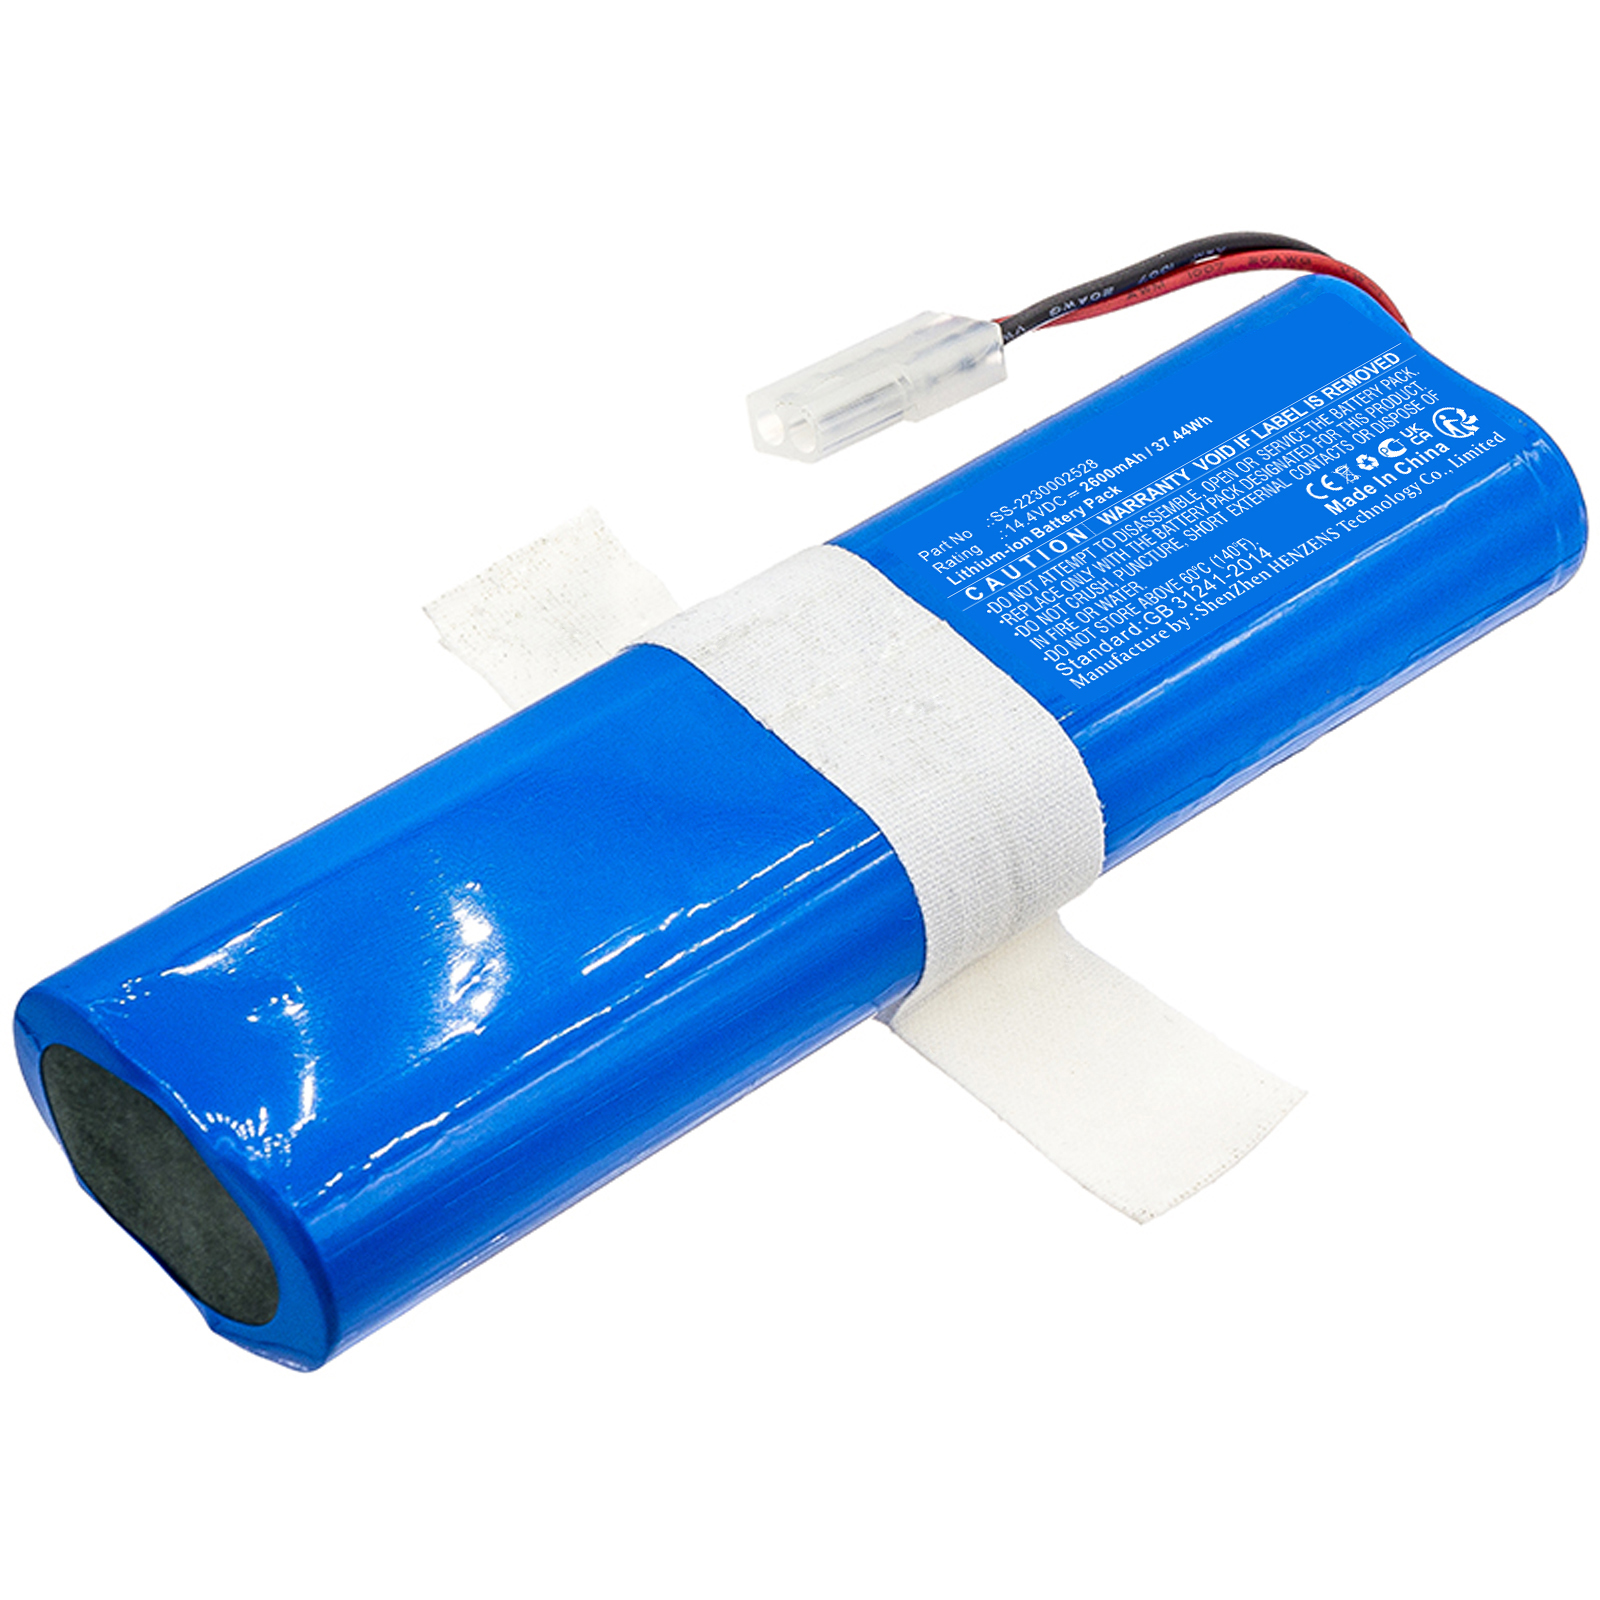 Batteries for OBH NordicaVacuum Cleaner